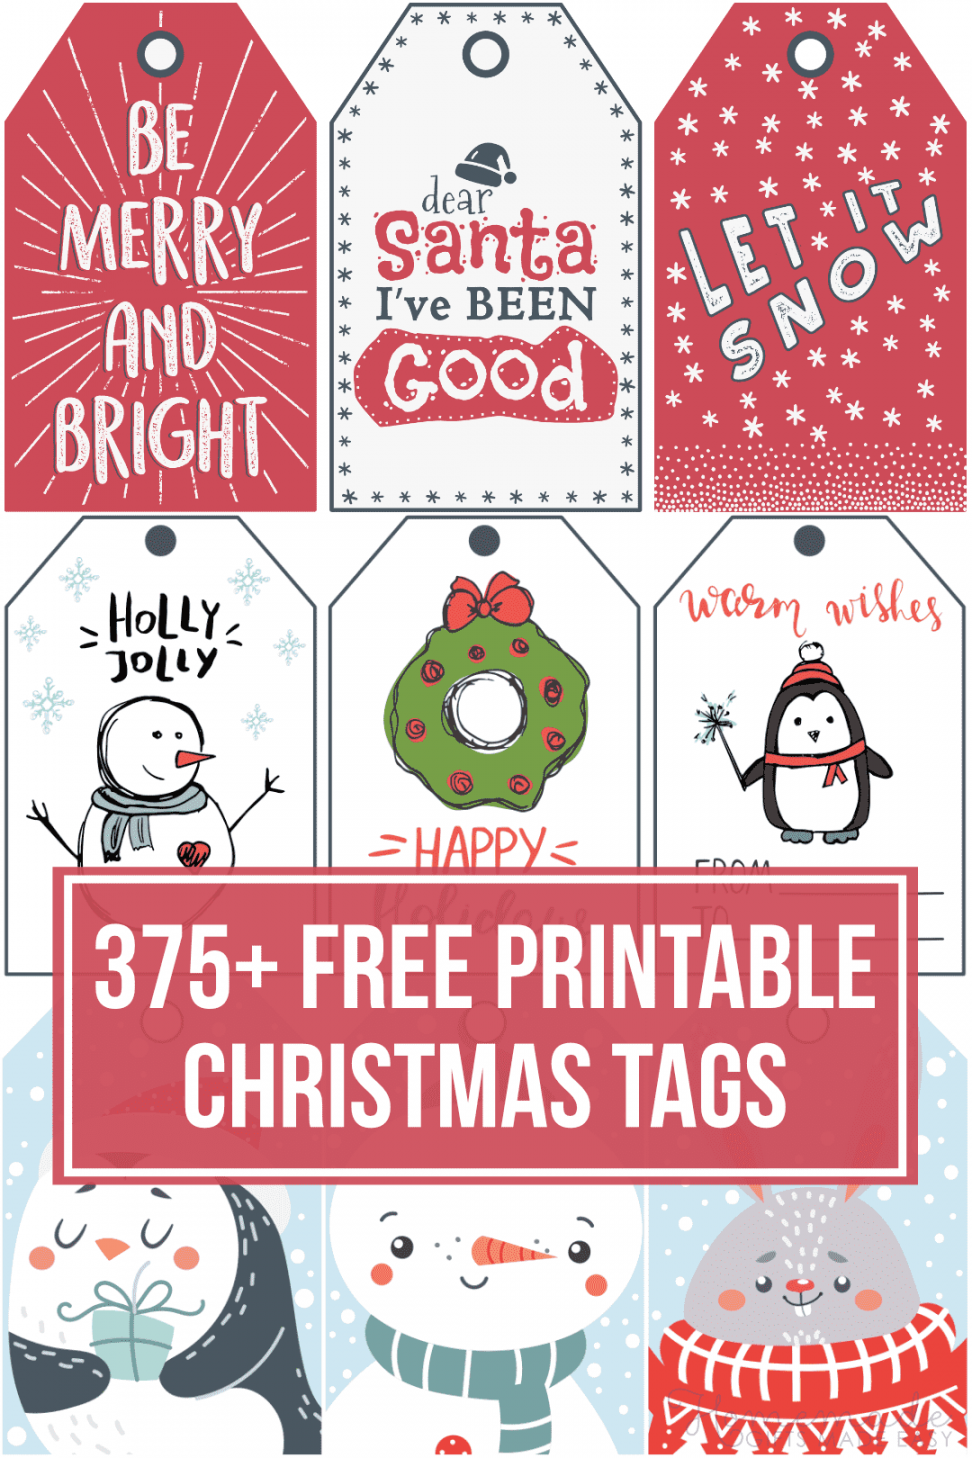 Christmas Gift Tags Free Printable - Printable - + Free Printable Christmas Tags for your Holiday Gifts